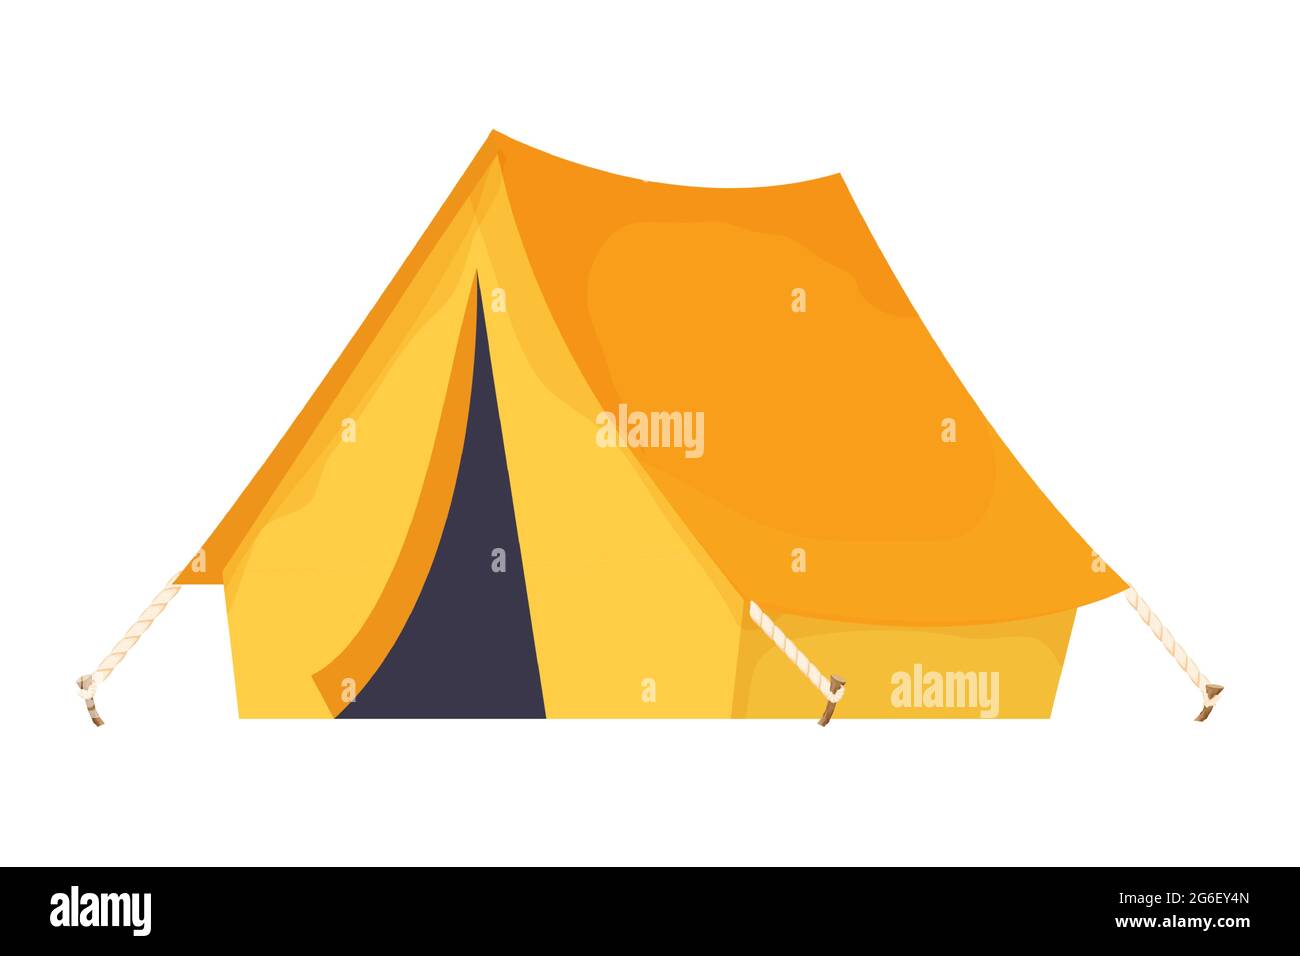 Camping Reise Zelt Ausrüstung im Cartoon-Stil isoliert auf weißem  Hintergrund. Abenteuer und Aktivität, Outdoor tragbares Haus. Vektorgrafik  Stock-Vektorgrafik - Alamy